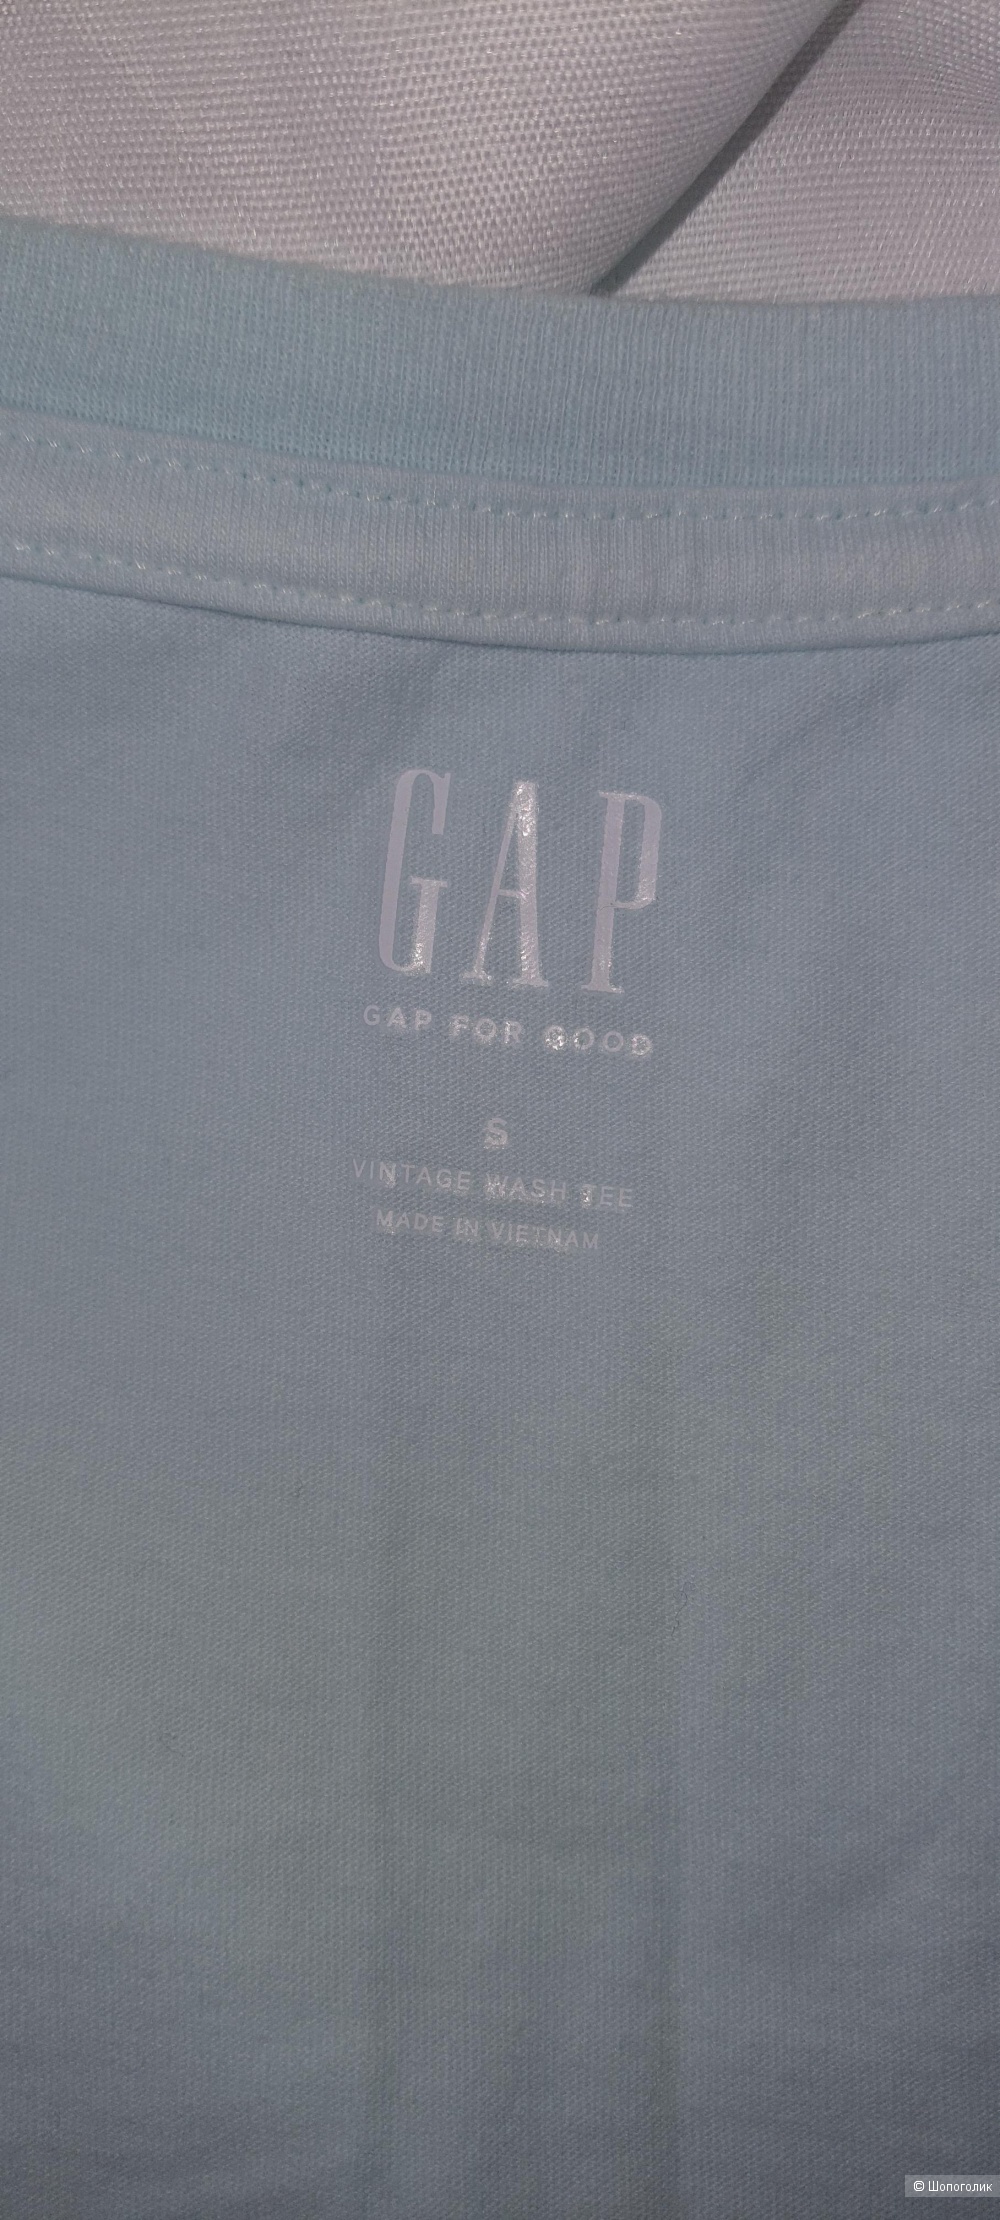 Футболка Gap новая размер S